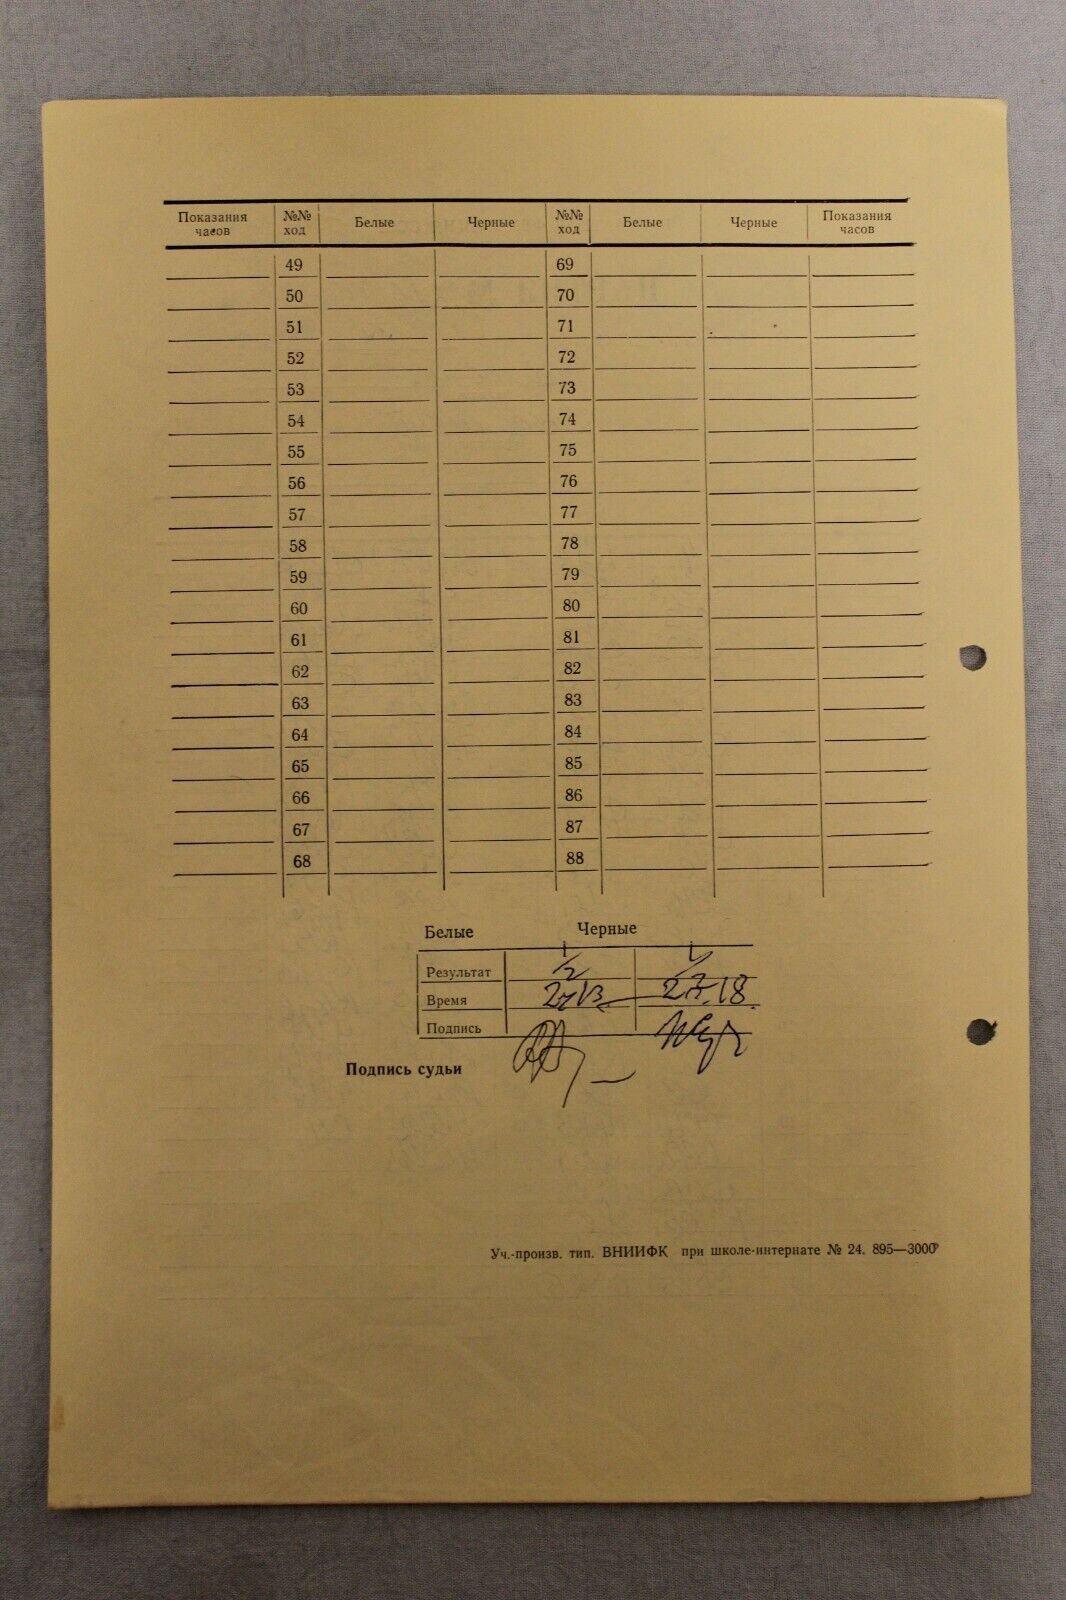 11859.Soviet Score Sheet. A. Zaitsev-Zhuhovitsky. 37th USSR Chess Championship. 1969